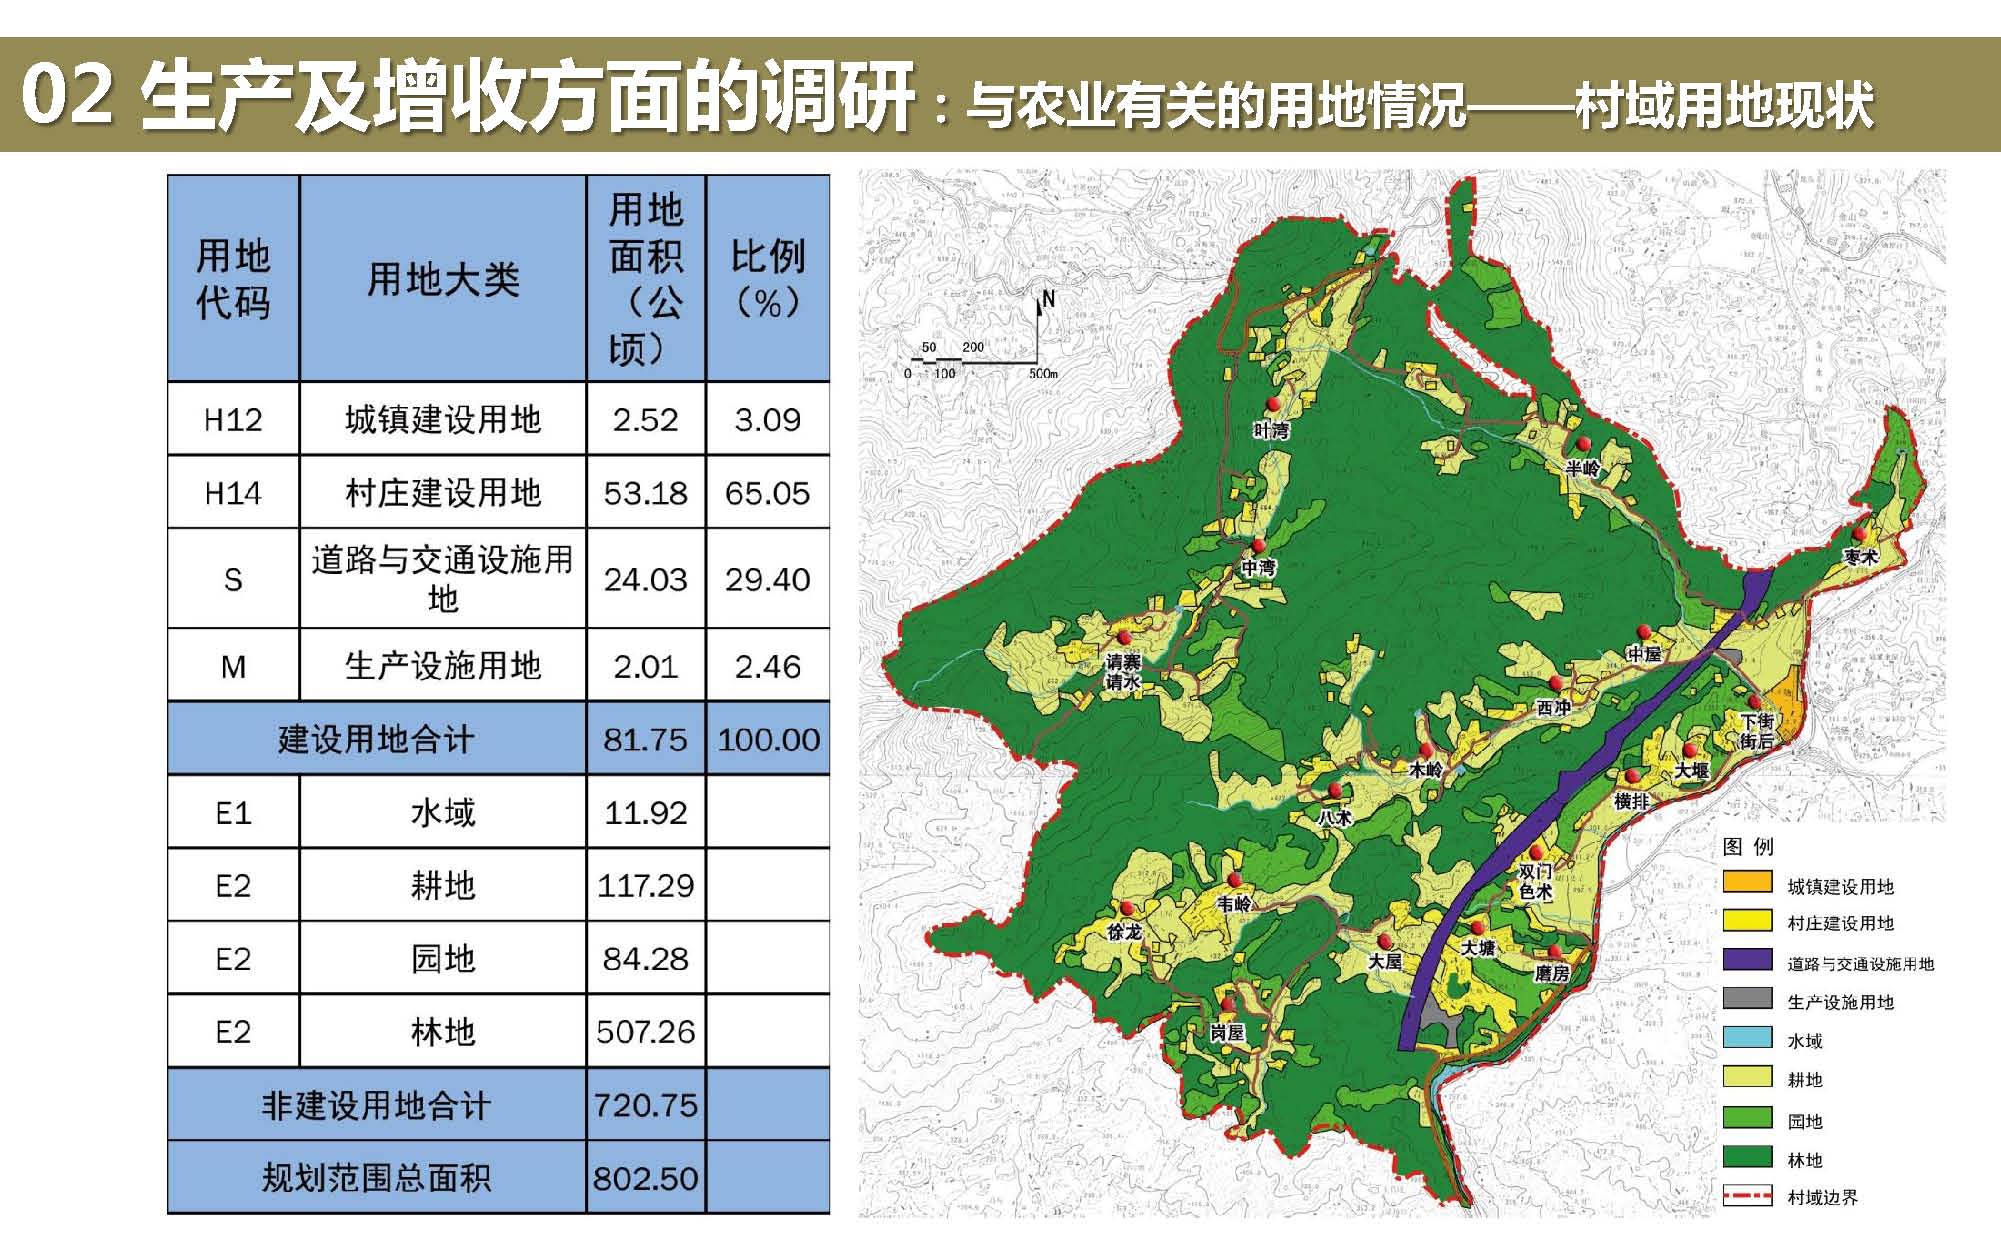 【安徽】南方生态宜居小镇景观规划设计方案